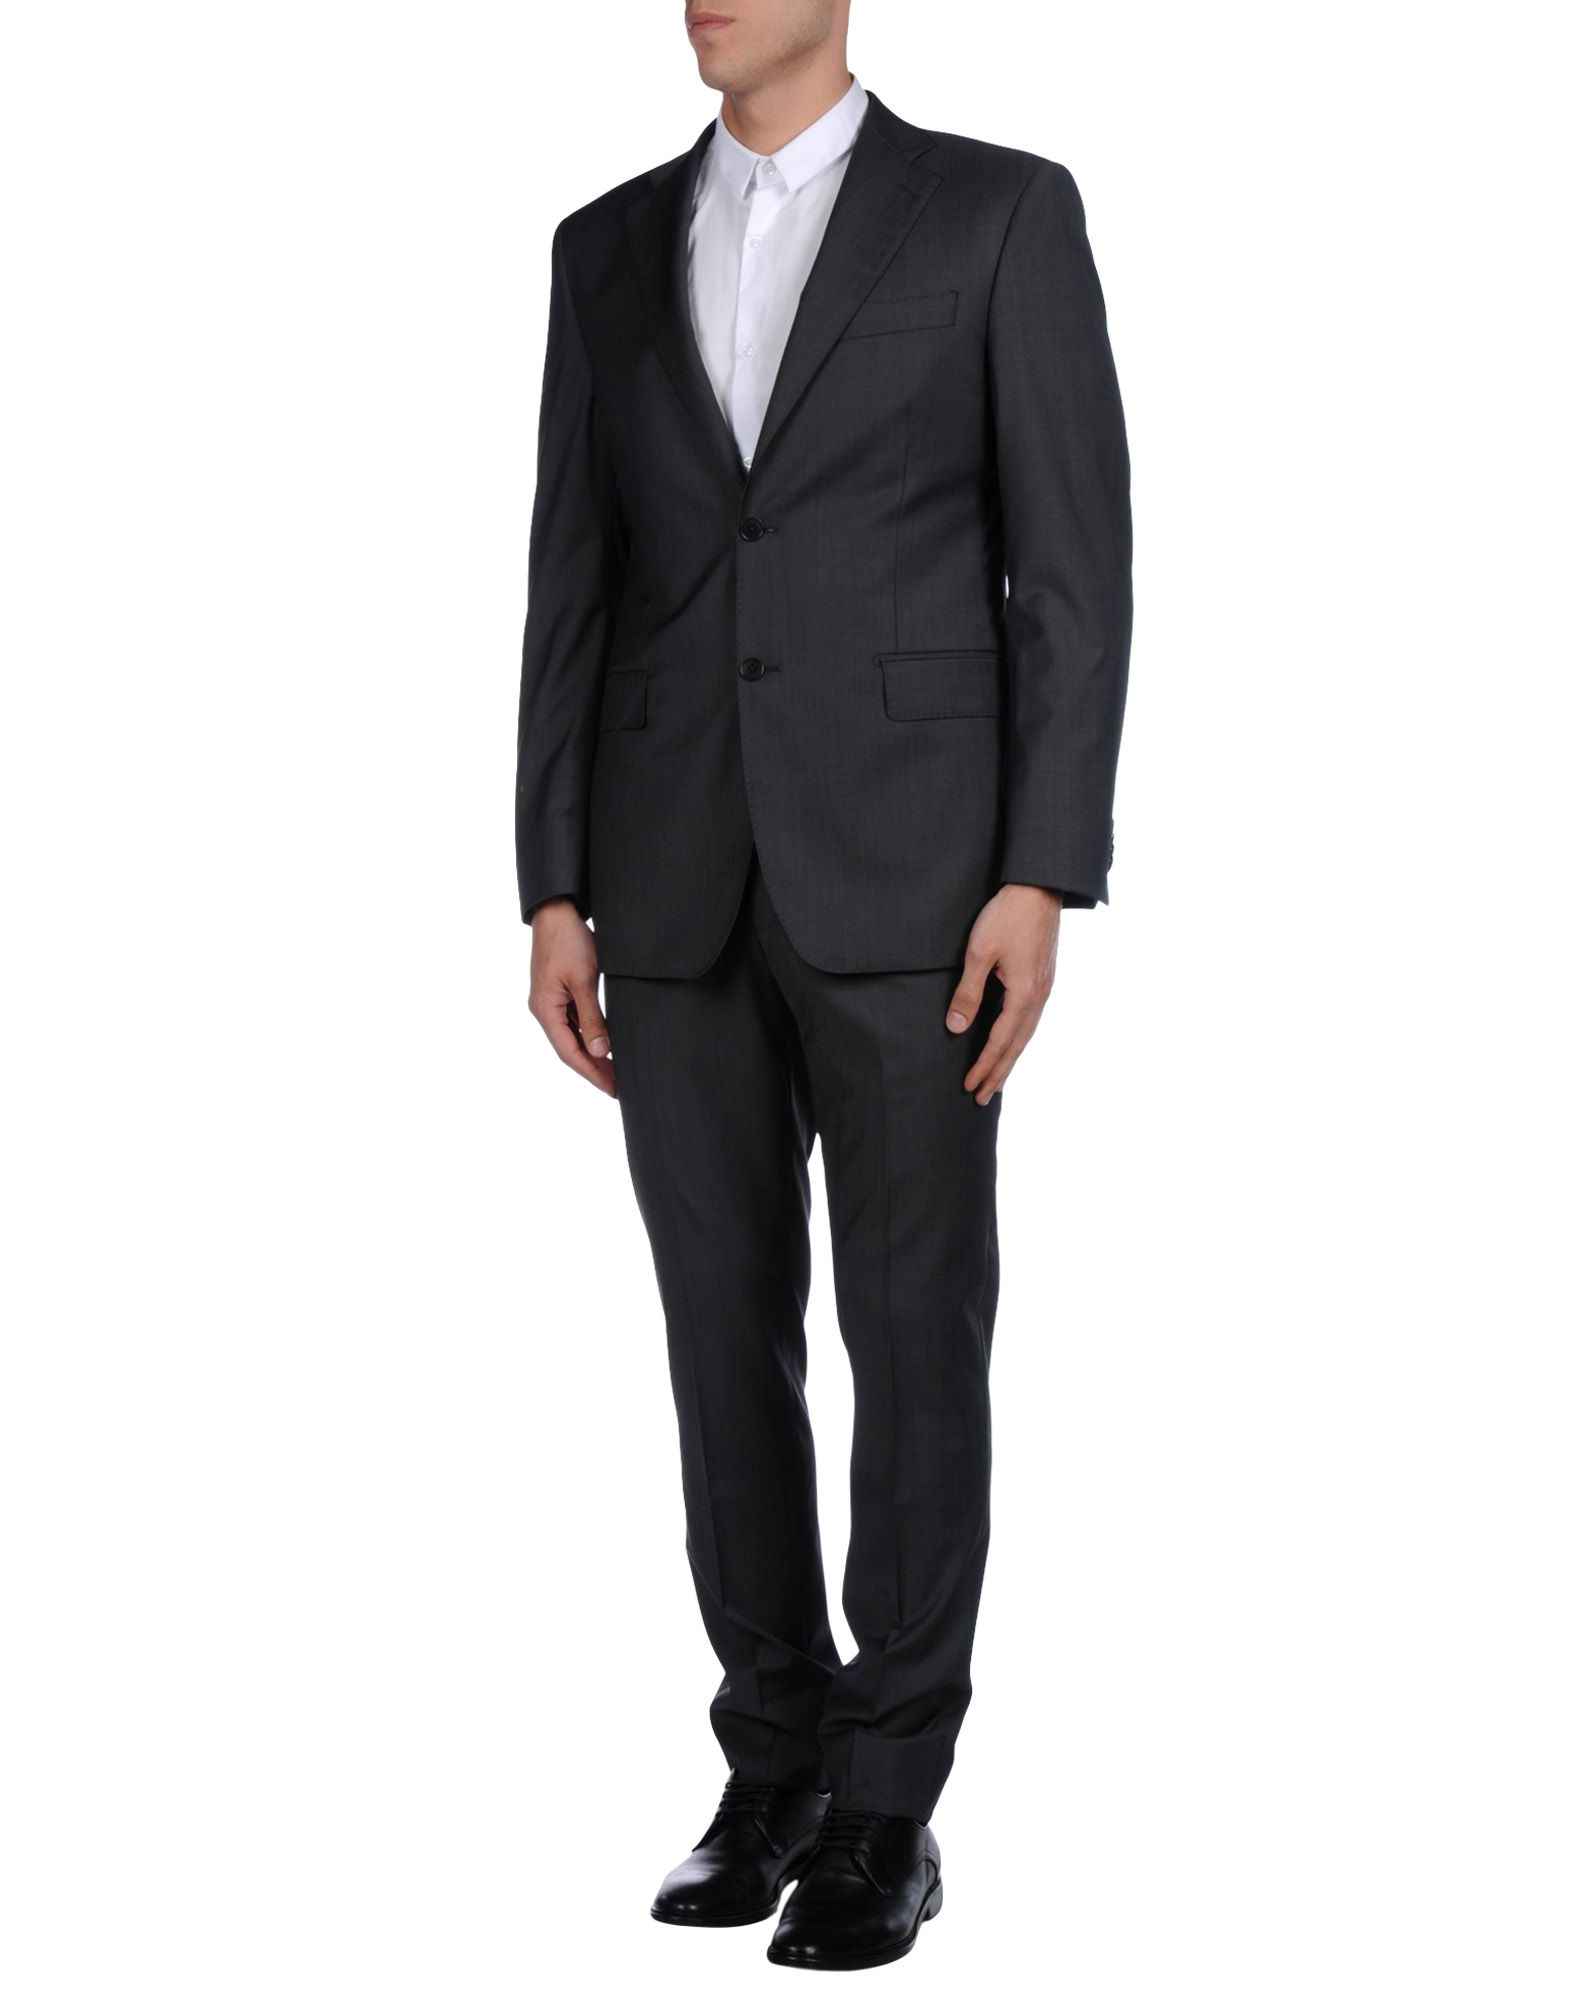 Lyst - Balmain Suit in Gray for Men